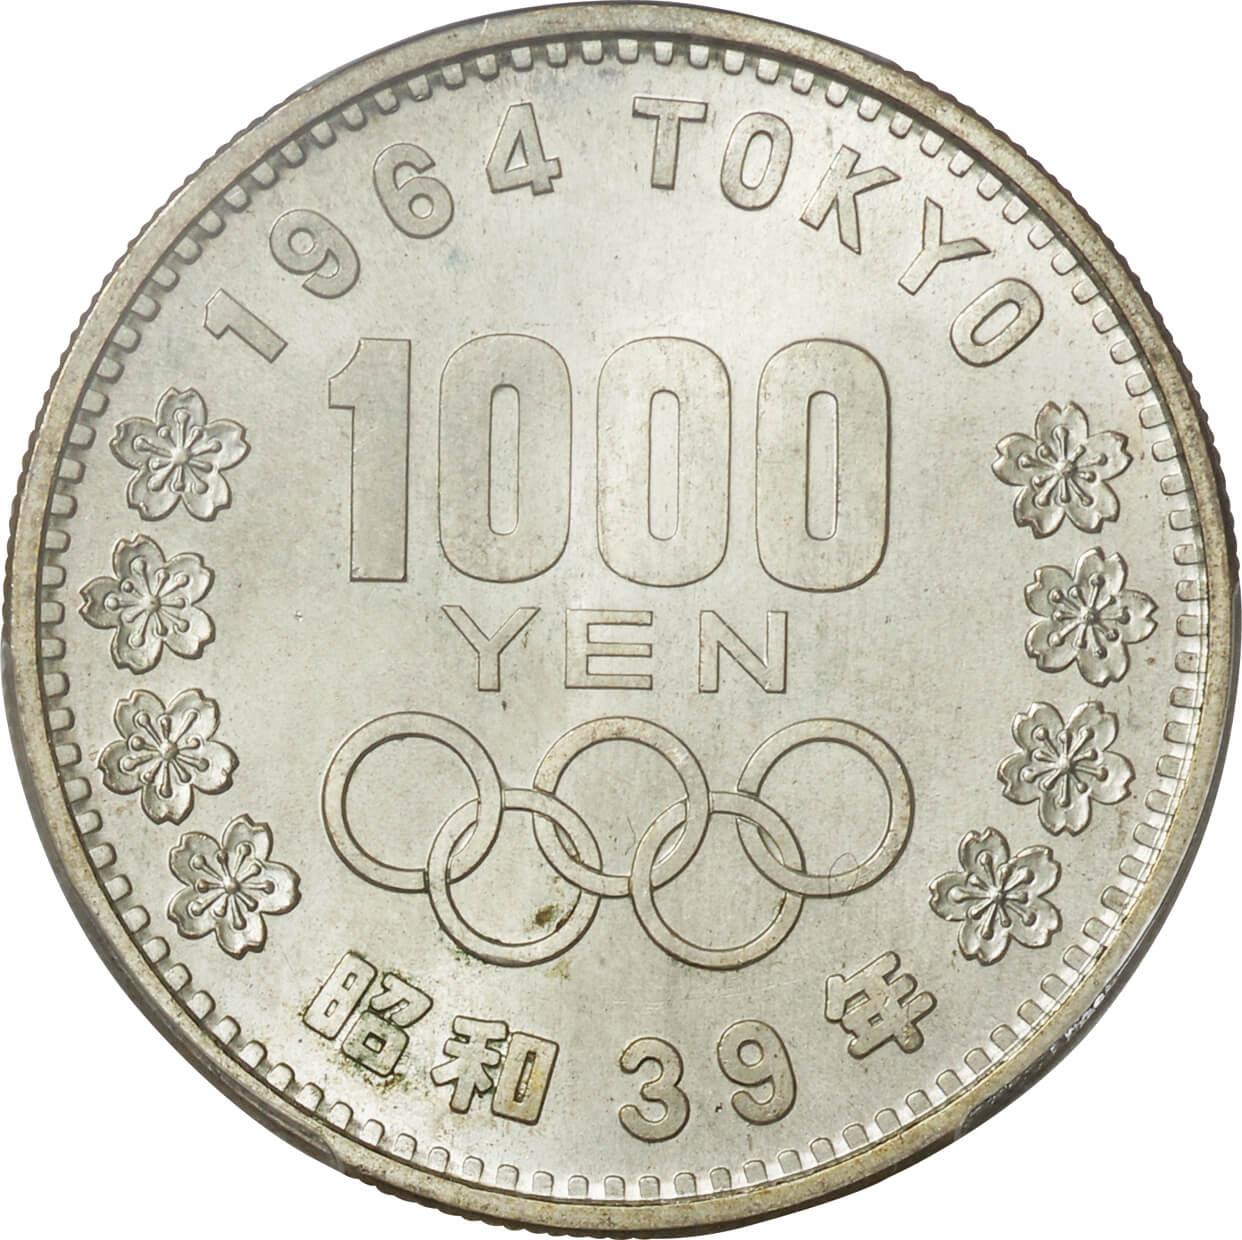 東京オリンピック記念 1000円銀貨 1964年 PCGS MS66 未使用品